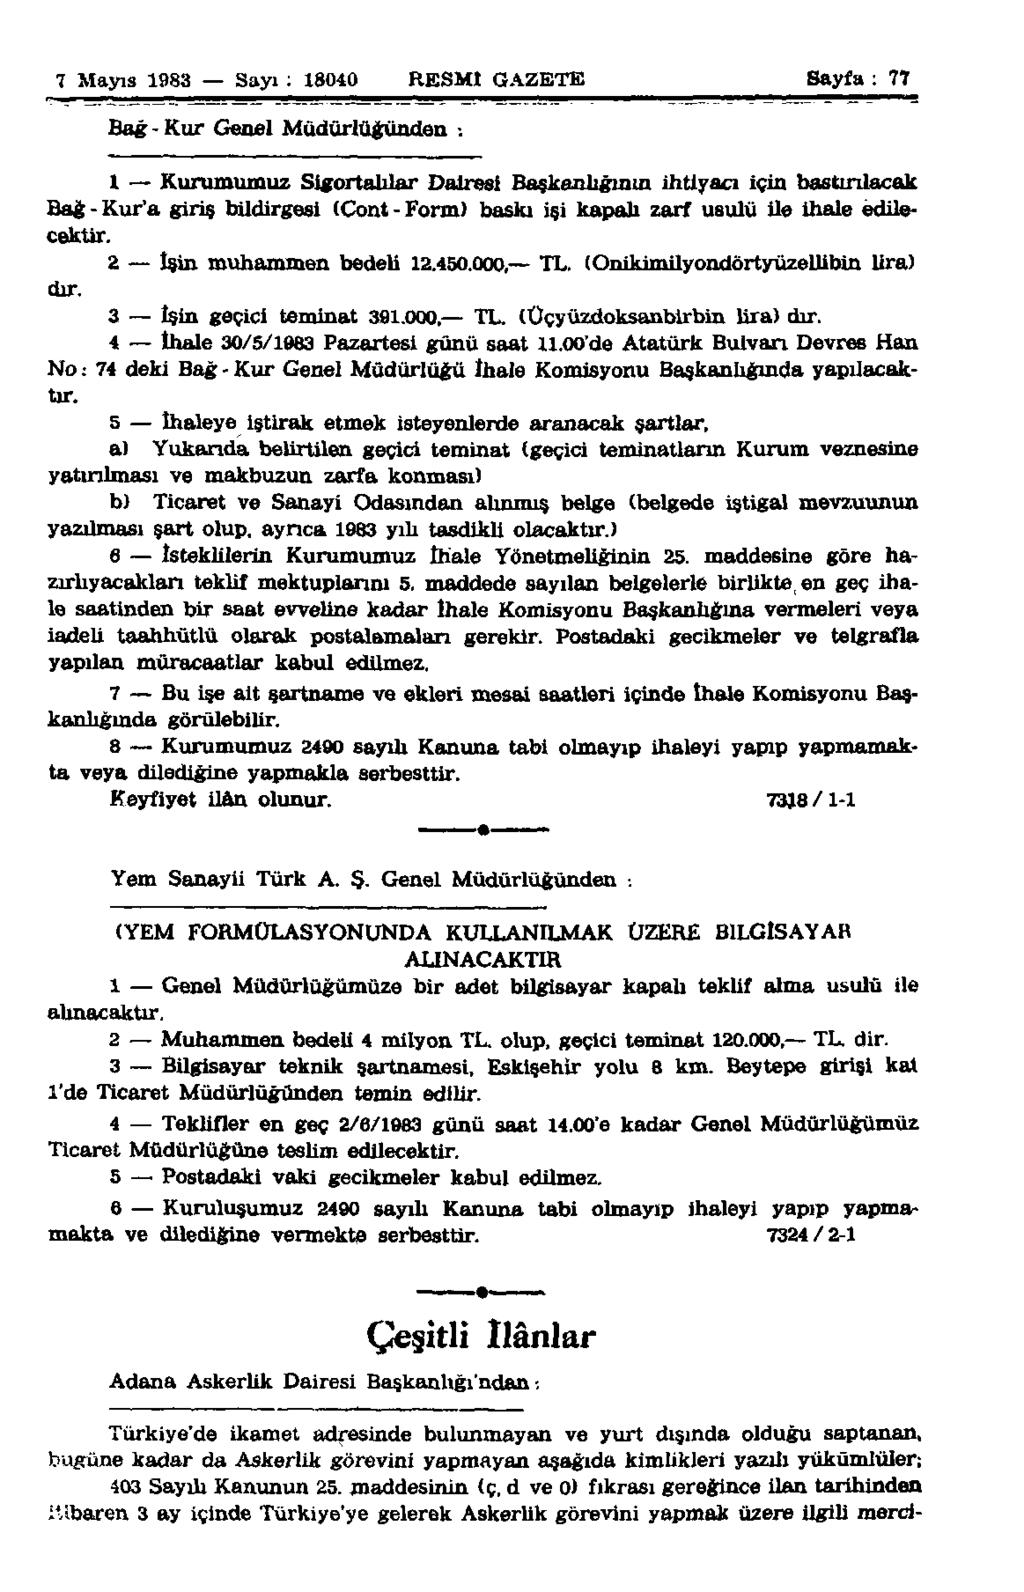 7 Mayıs 1983 Sayı : 18040 RESMİ GAZETE Sayfa : 77 Bağ - Kur Genel Müdürlüğünden.